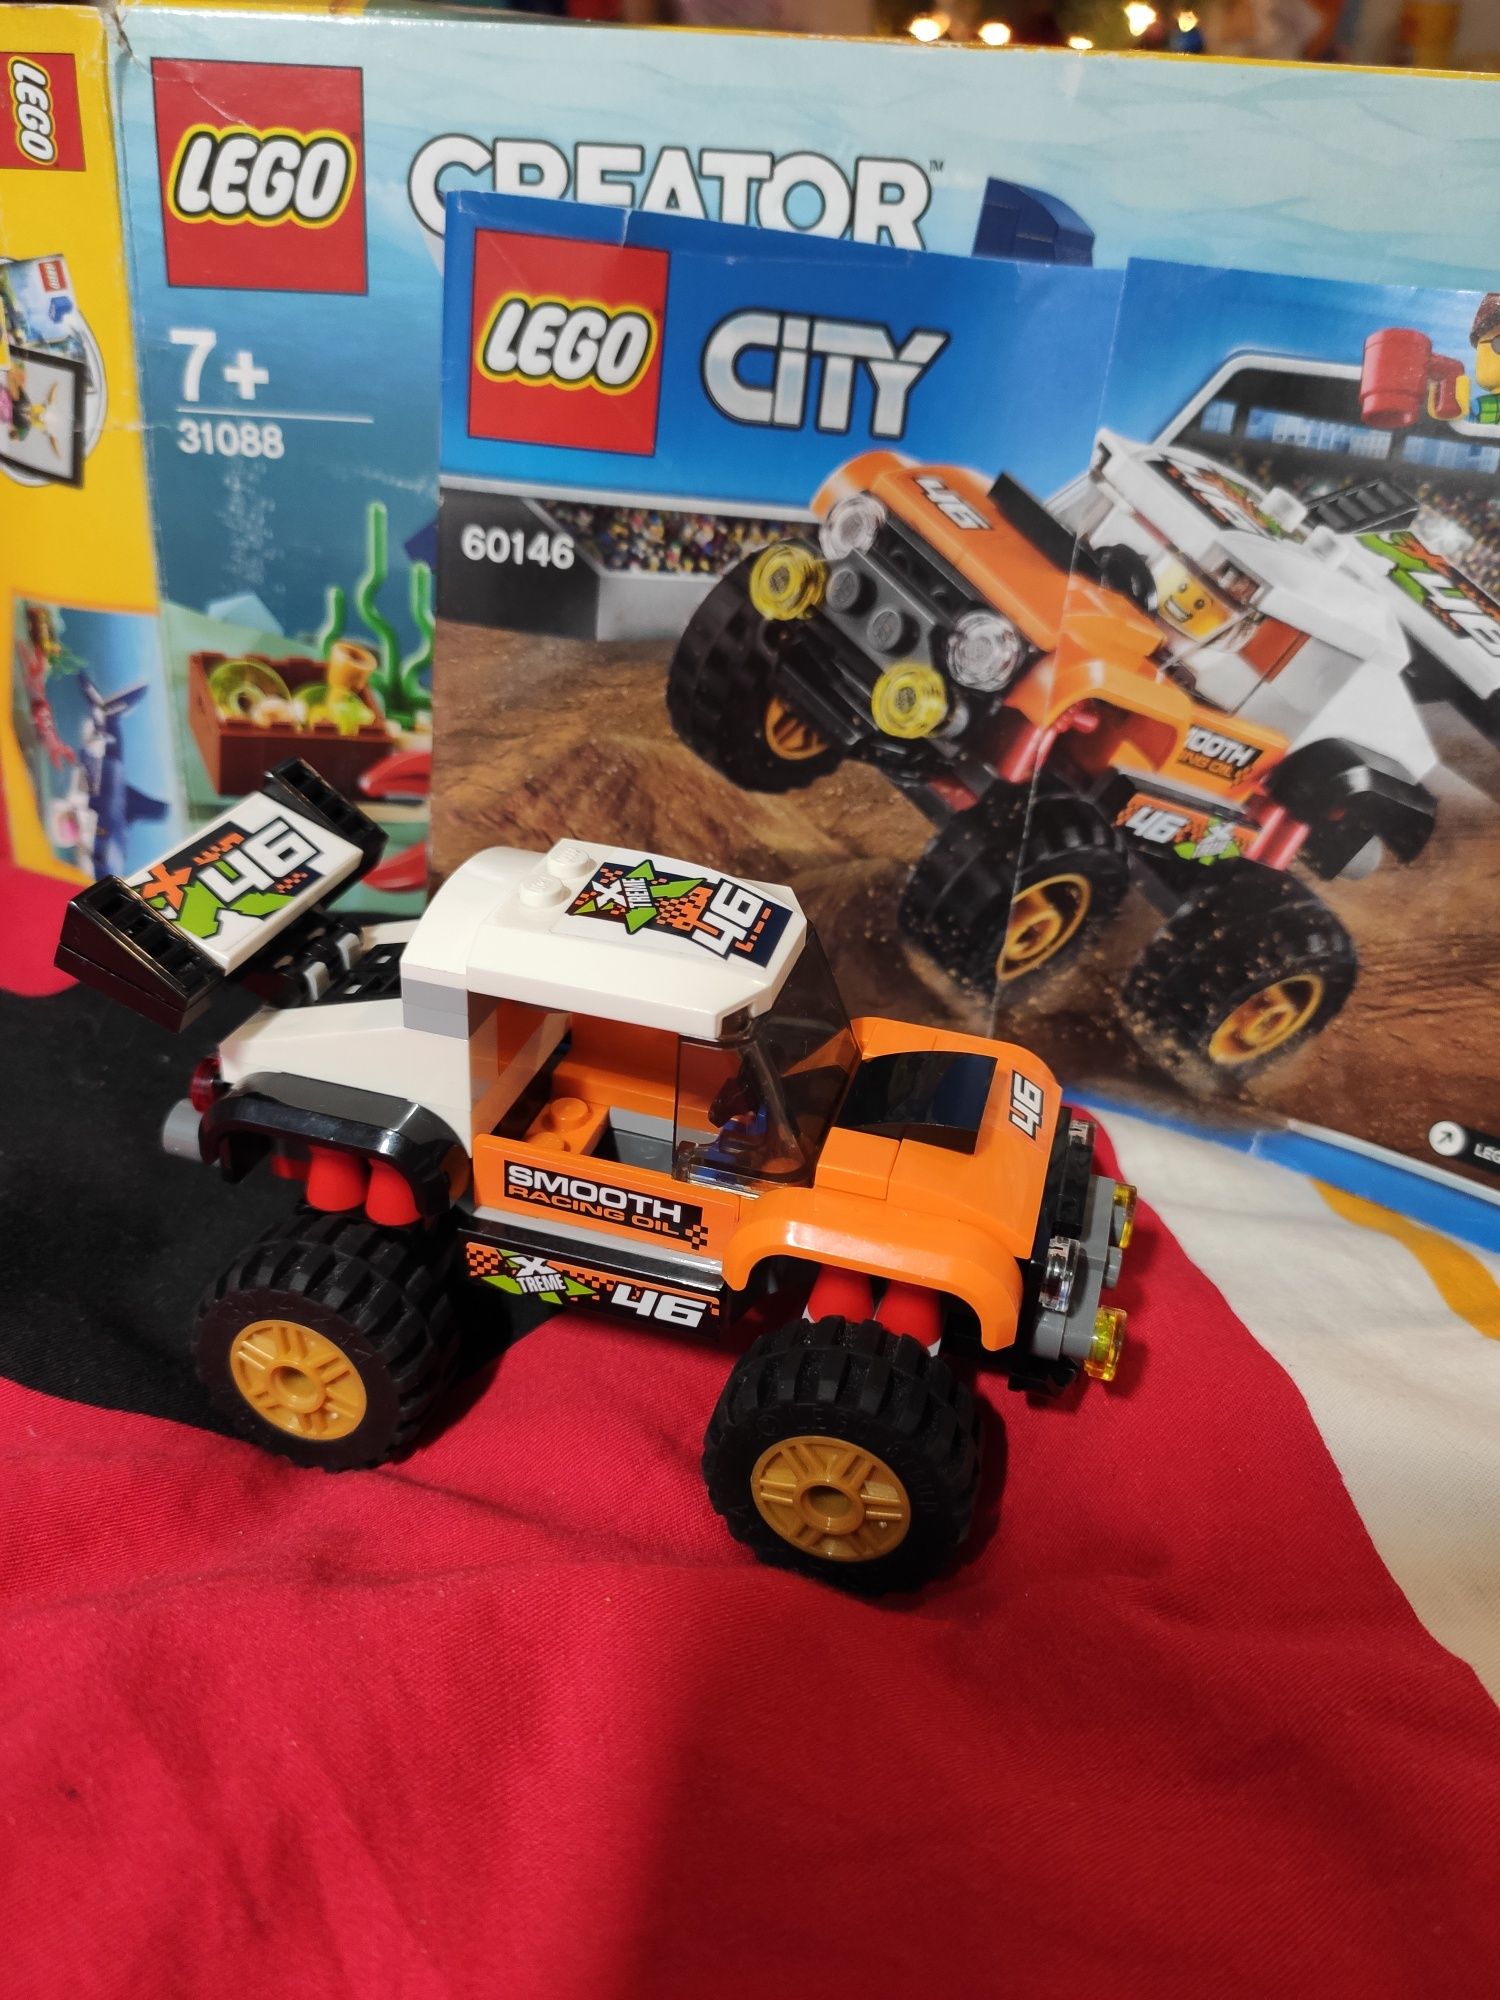 LEGO City Внедорожник каскадера (60146)монстер трак джип внедорожник